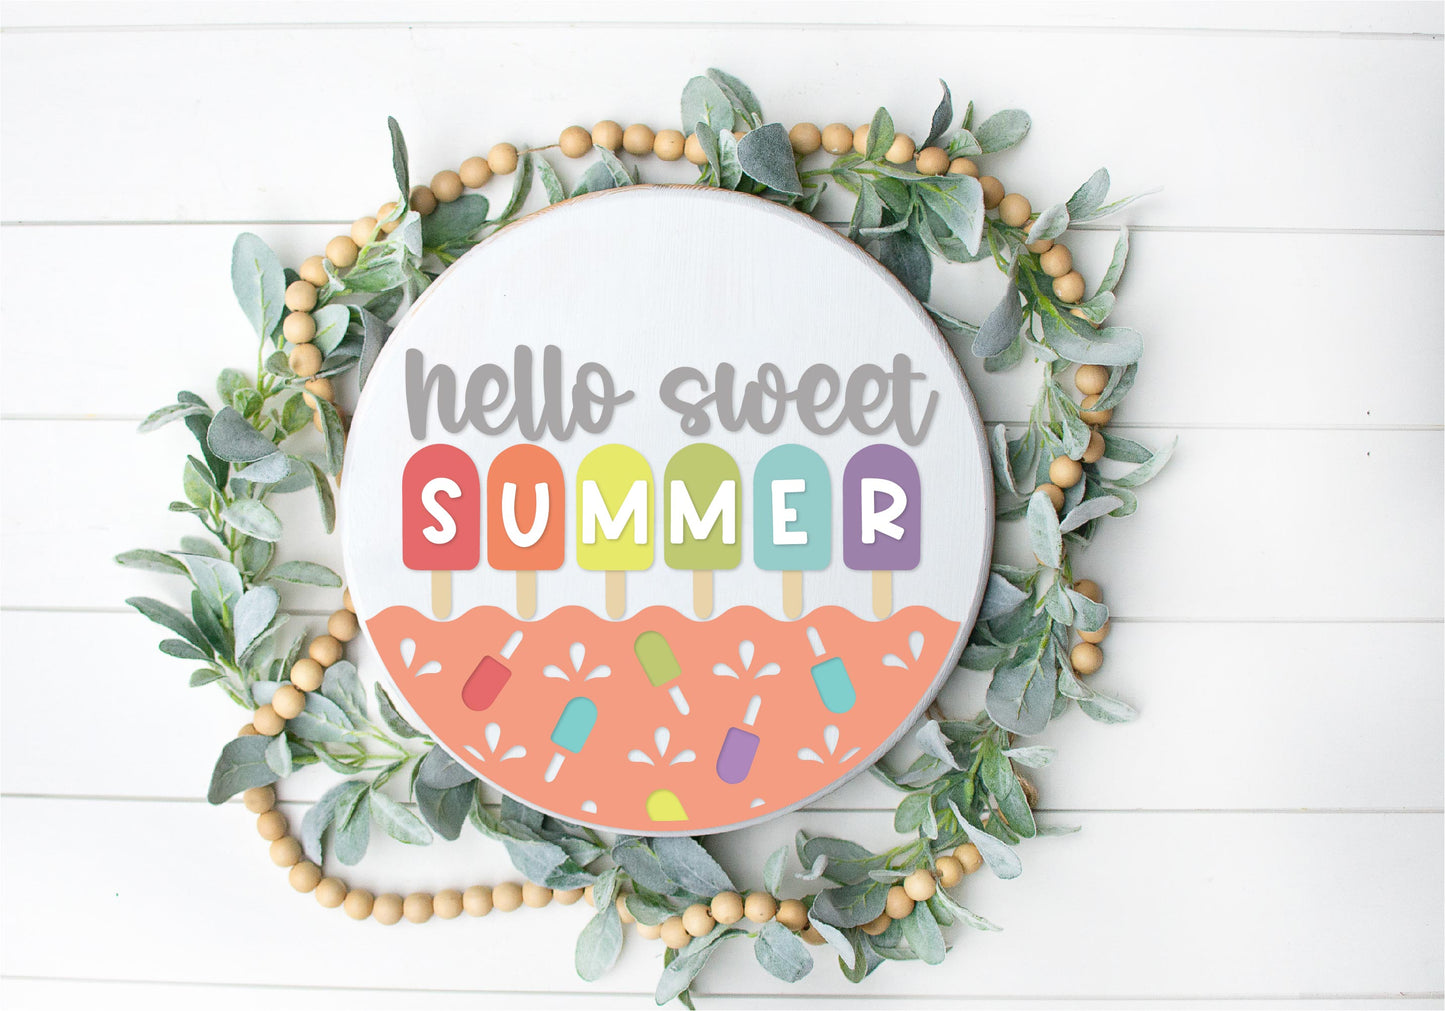 Sweet summer popsicle front door wreath sign